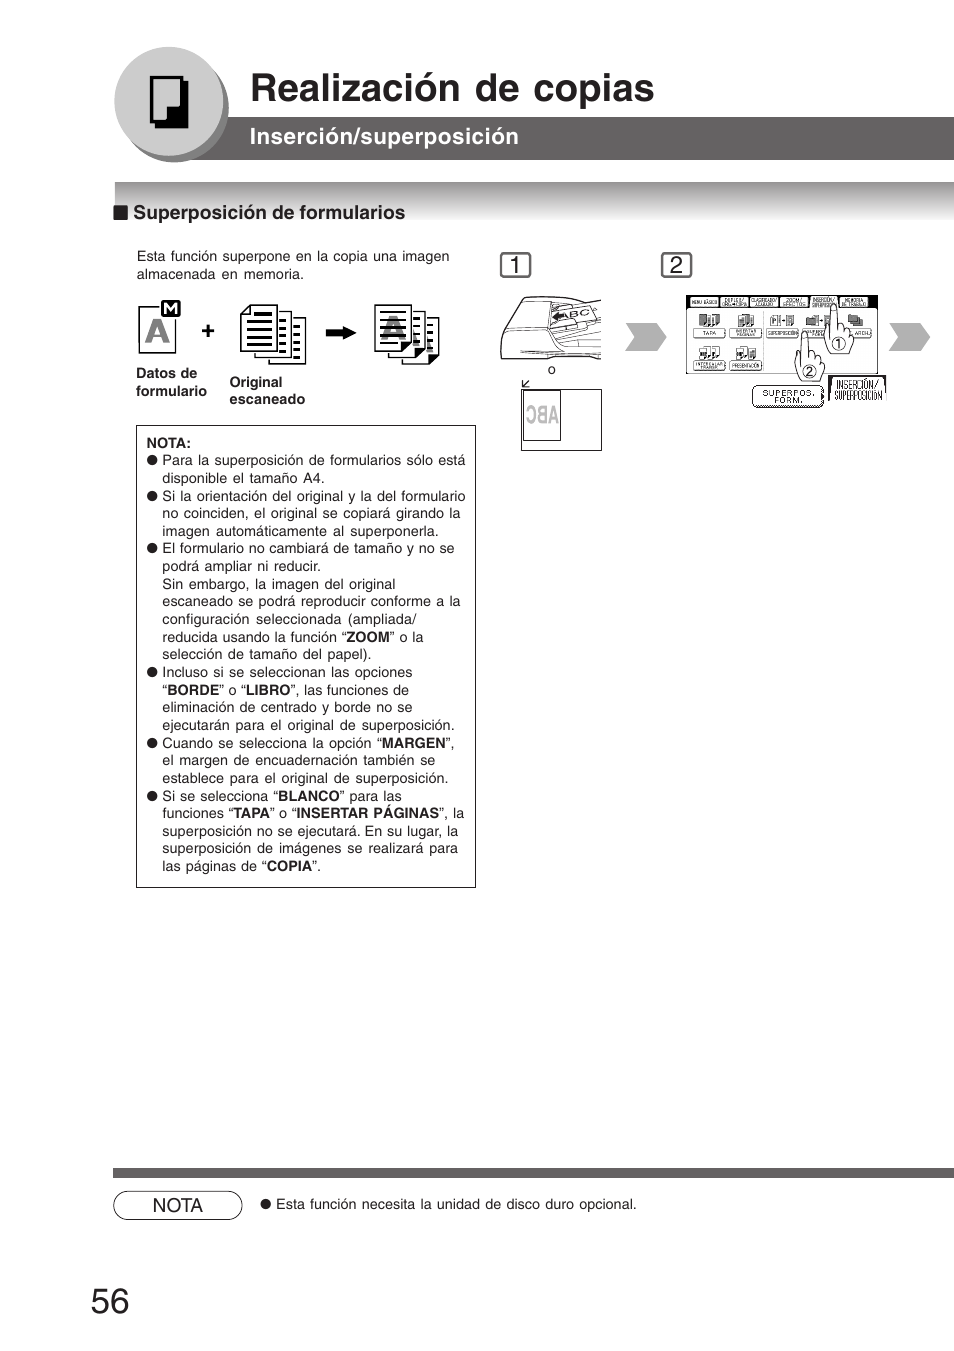 Superposición de formularios, Realización de copias, Inserción/superposición | Panasonic DP8035 Manual del usuario | Página 56 / 92